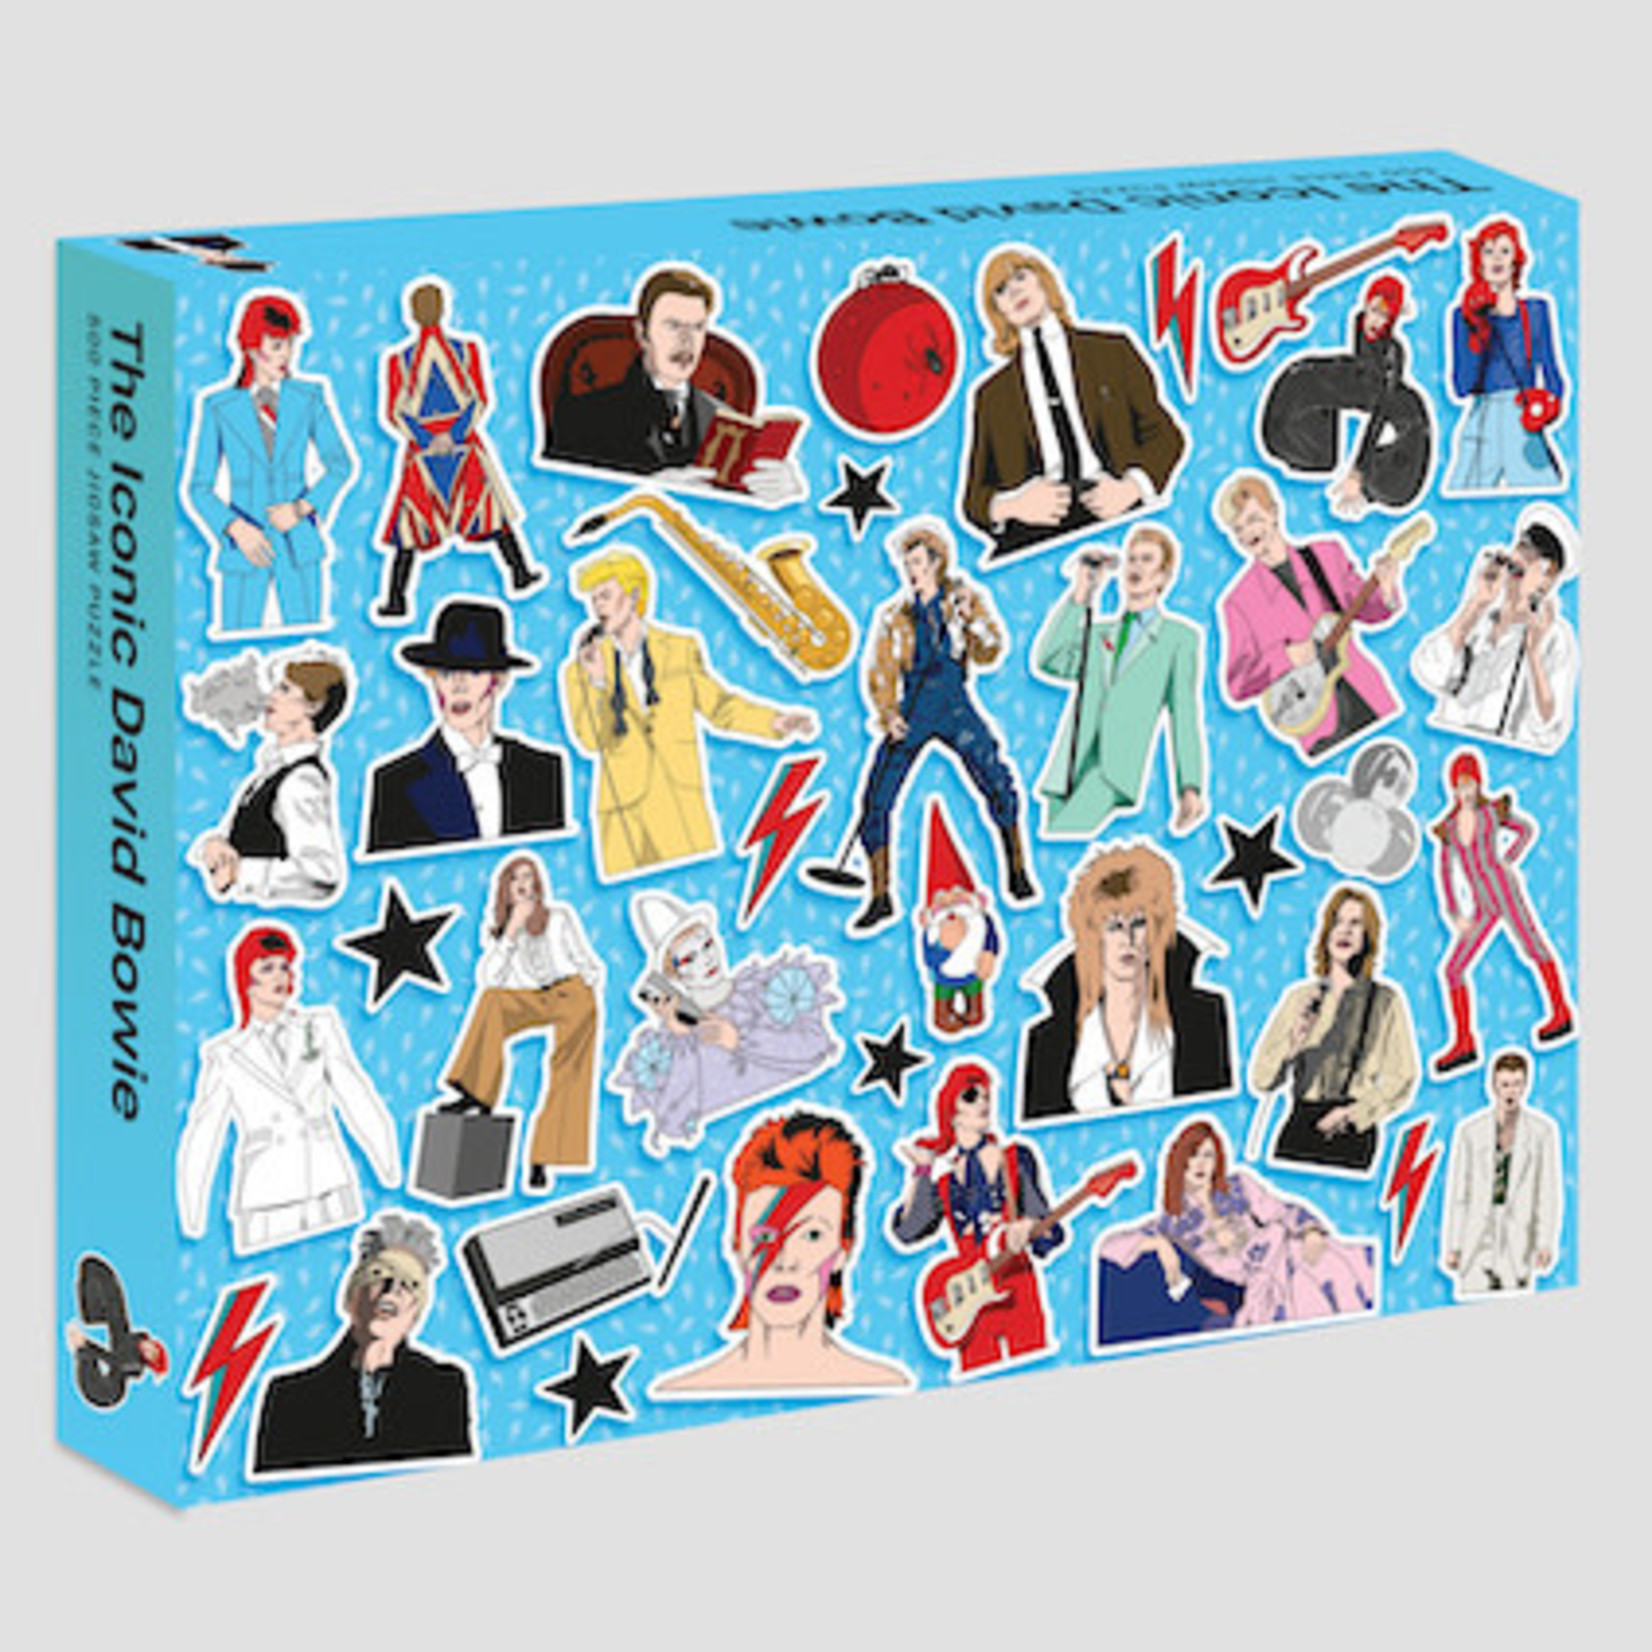 Rizzoli Smith Street Books Iconic David Bowie 500 Piece Jigsaw Puzzle